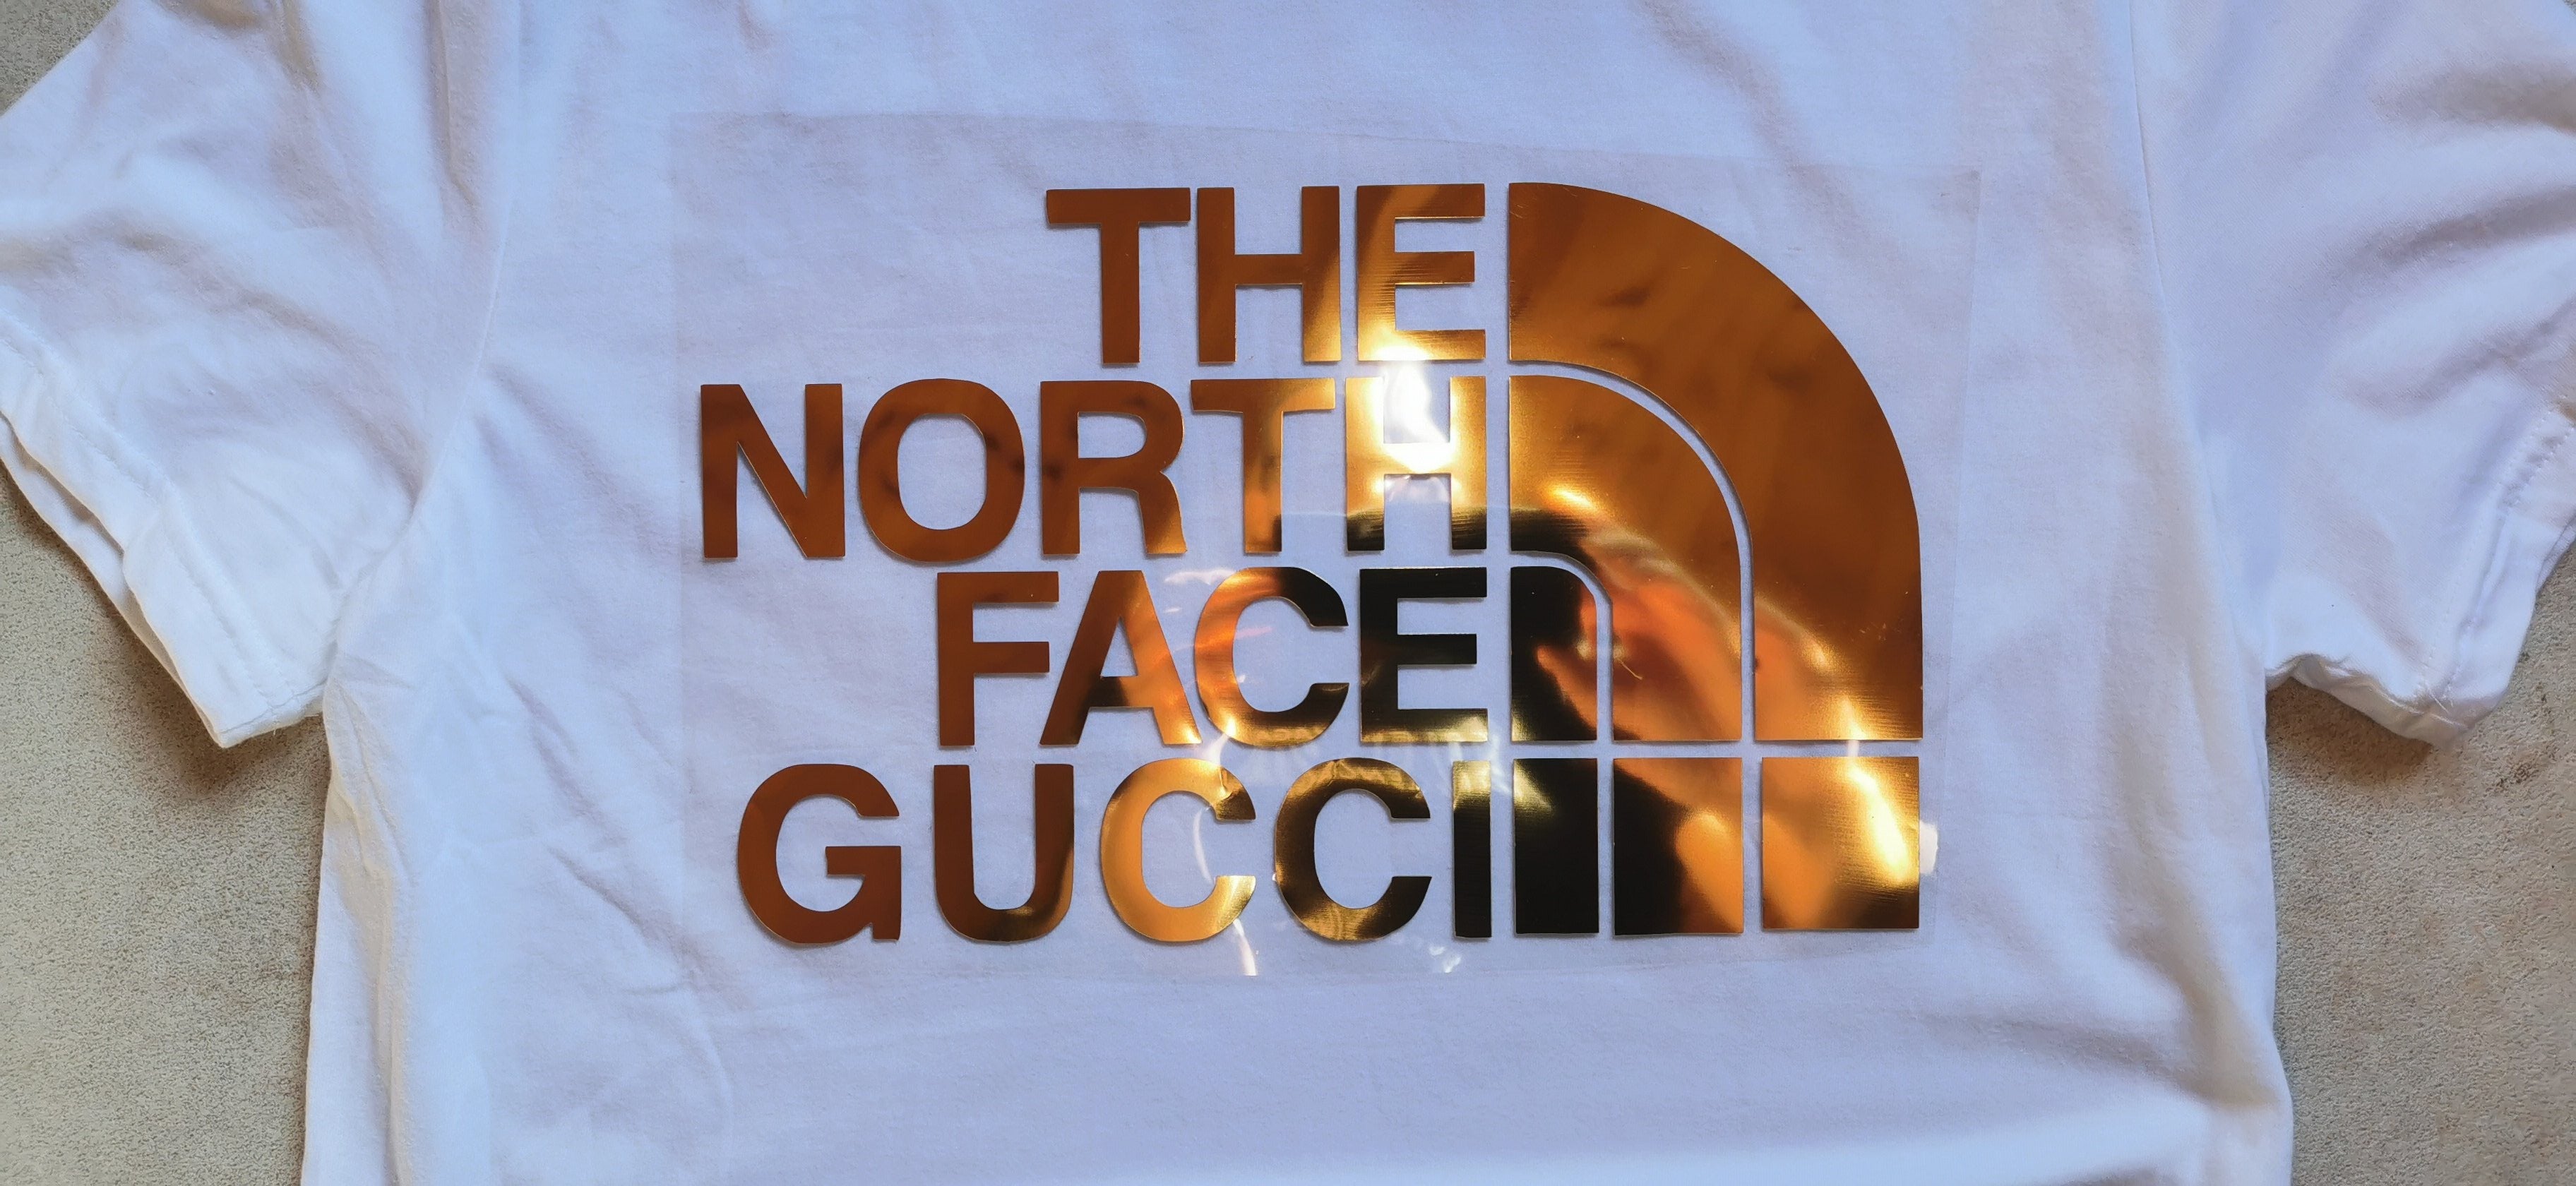 the north face gucci logo